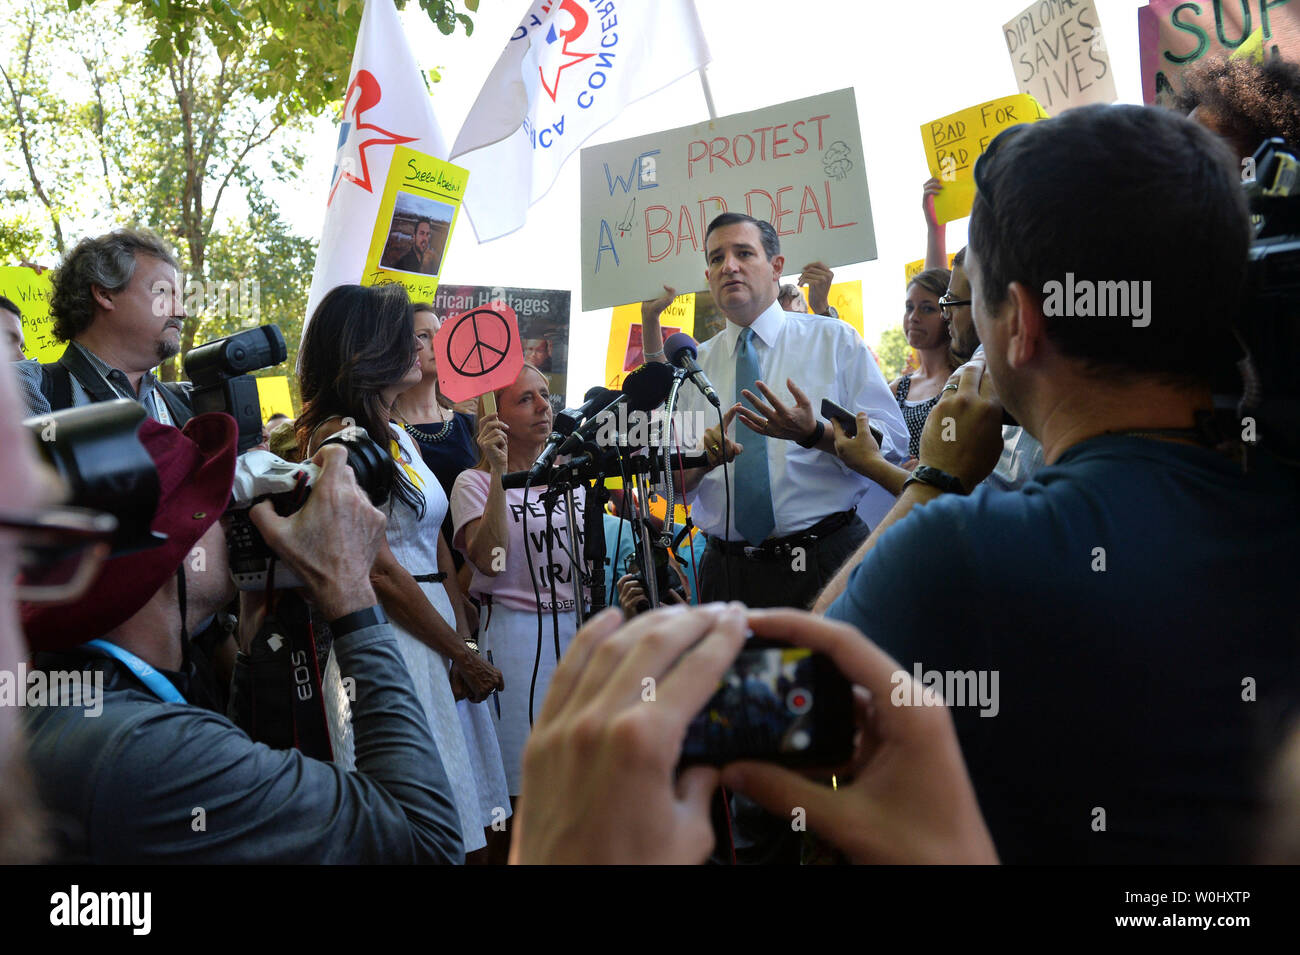 Präsidentschaftskandidaten Senator Ted Cruz (R-TX) wird durch Demonstranten schwärmten, wie er auf einer Kundgebung kritisierte nuklearer Deal der Obama-Regierung, die mit dem Iran für die Freilassung von vier amerikanischen Geiseln, in Washington, D.C. am 23. Juli 2015 spricht. Die protestgruppe Codepink protestiert bei der Veranstaltung zur Unterstützung des Iran befassen. Foto von Kevin Dietsch/UPI Stockfoto